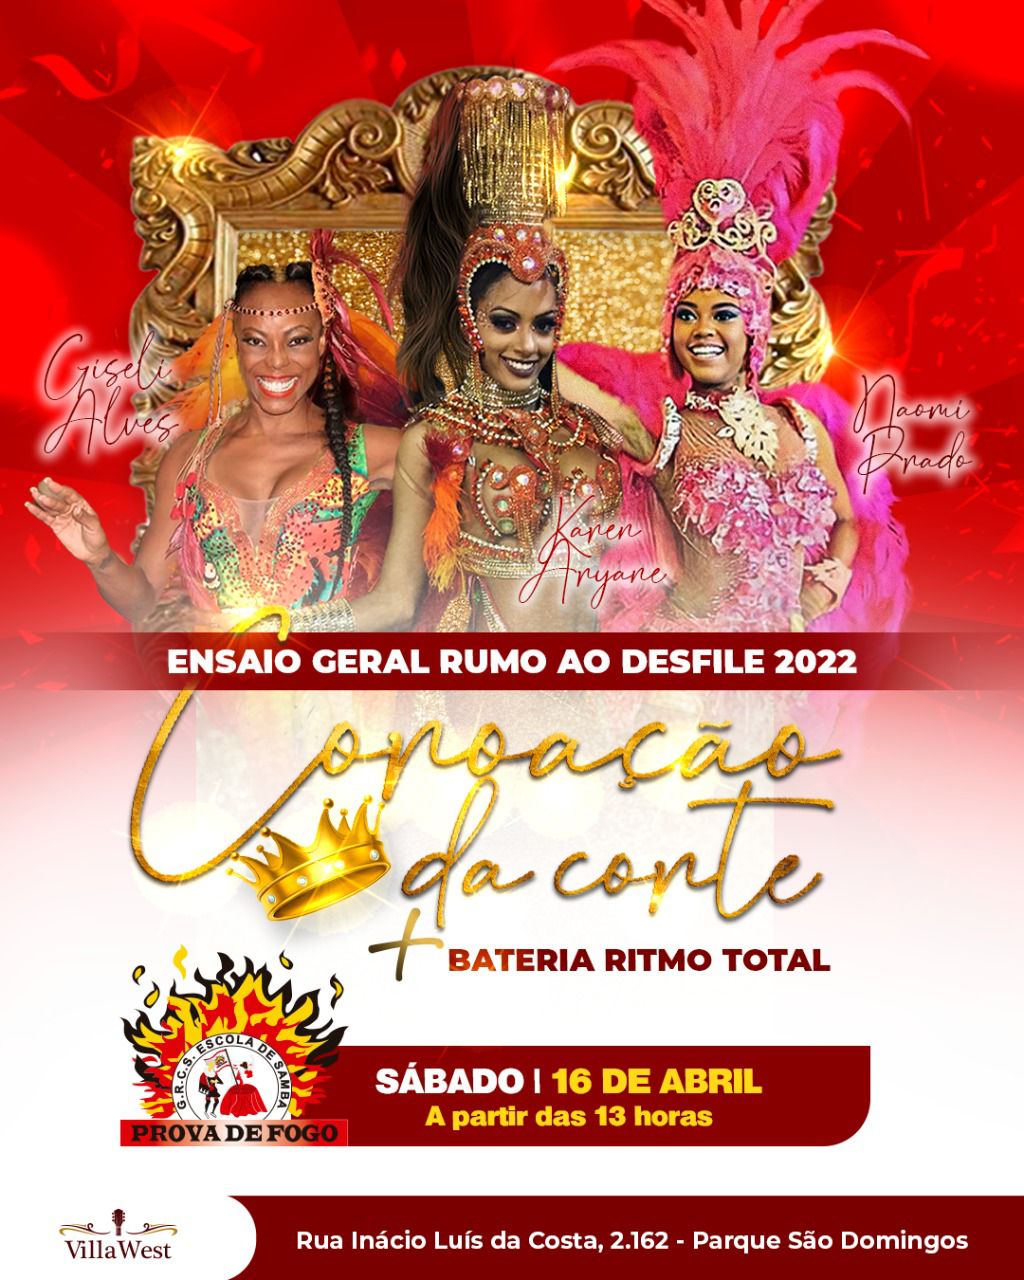 A escola de samba Prova de Fogo promove neste sábado (16/4) mais um evento rumo ao Carnaval 2022.